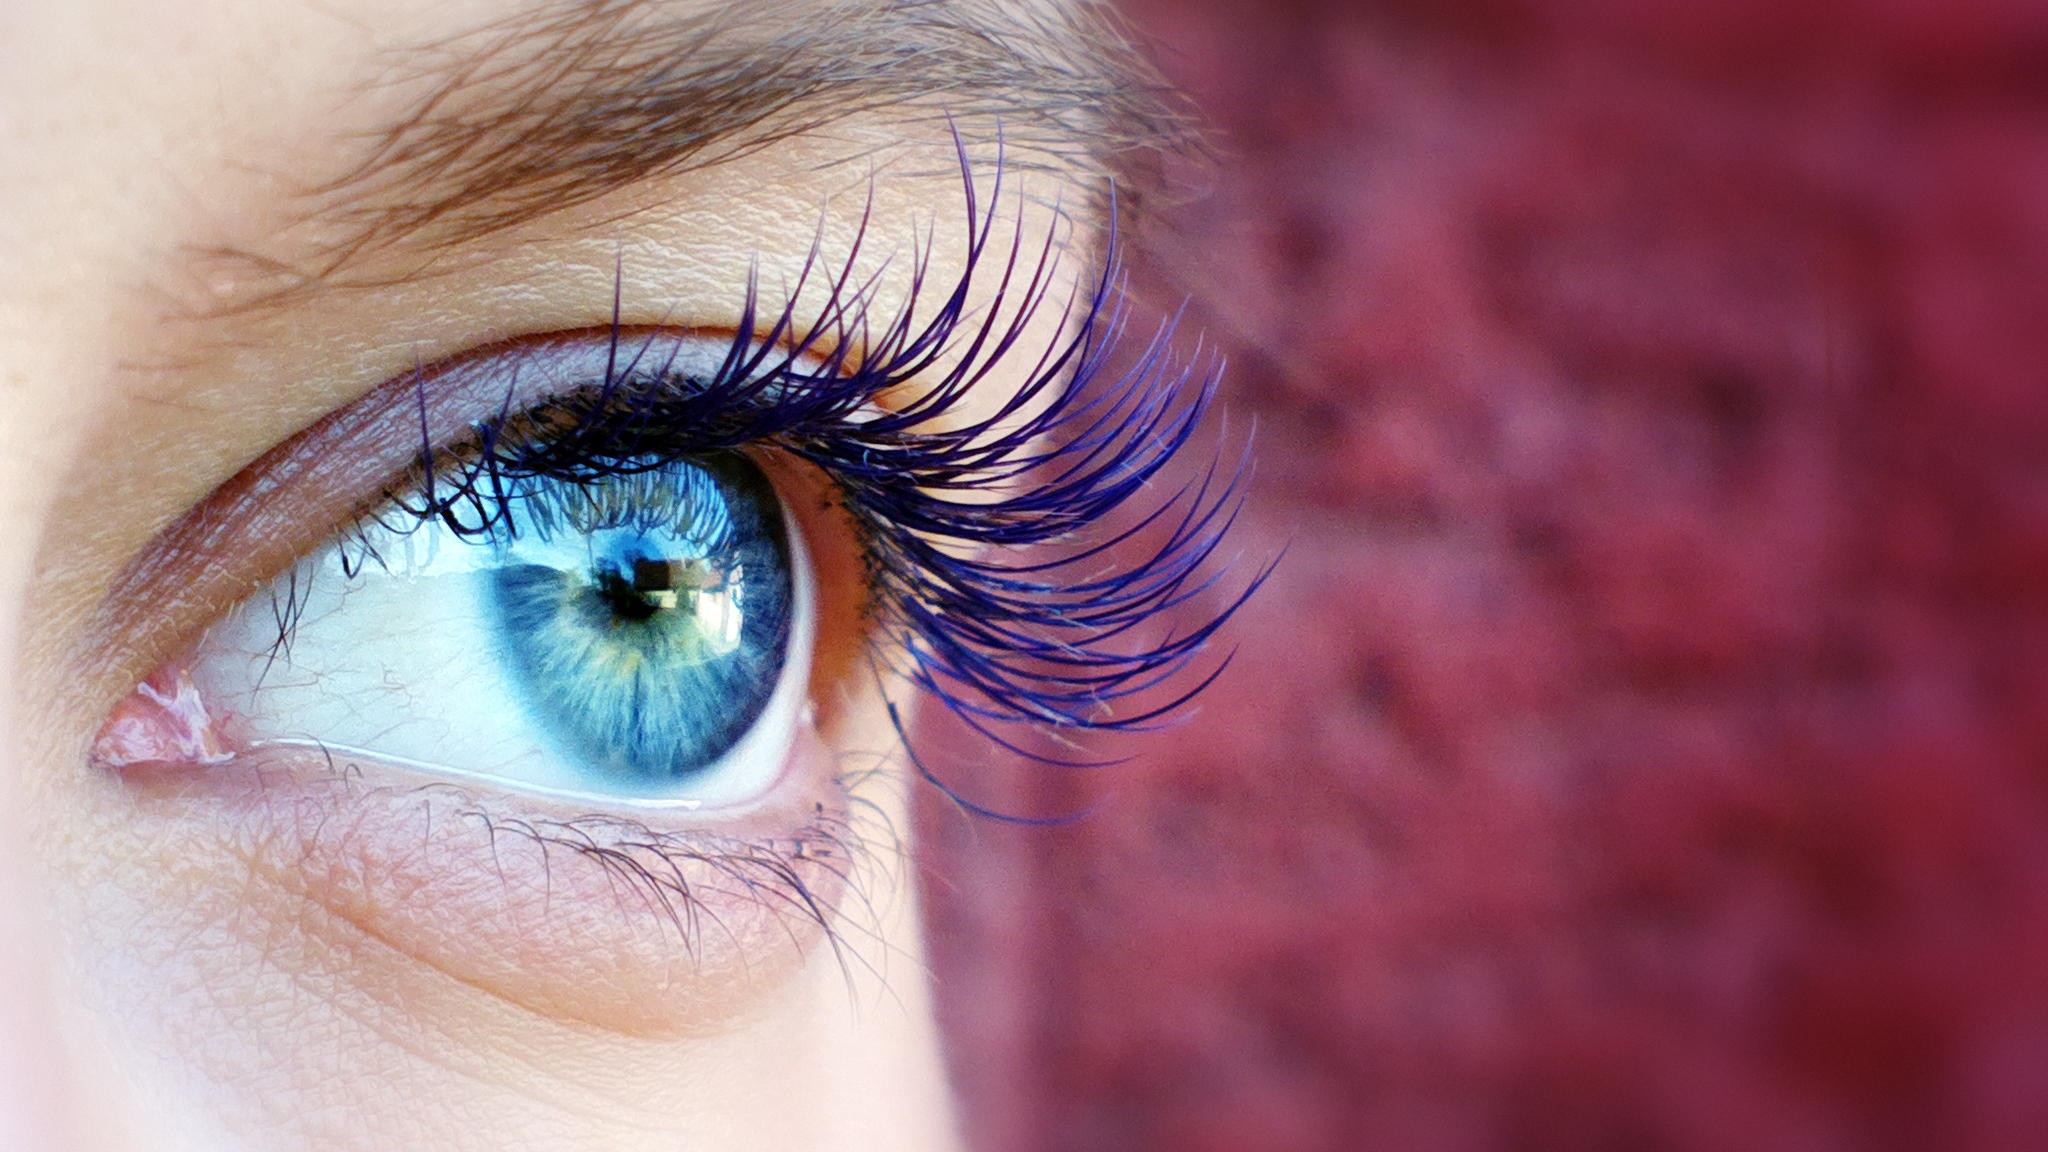 People 2048x1152 blue eyes long eyelashes macro reflection women eyes closeup red background